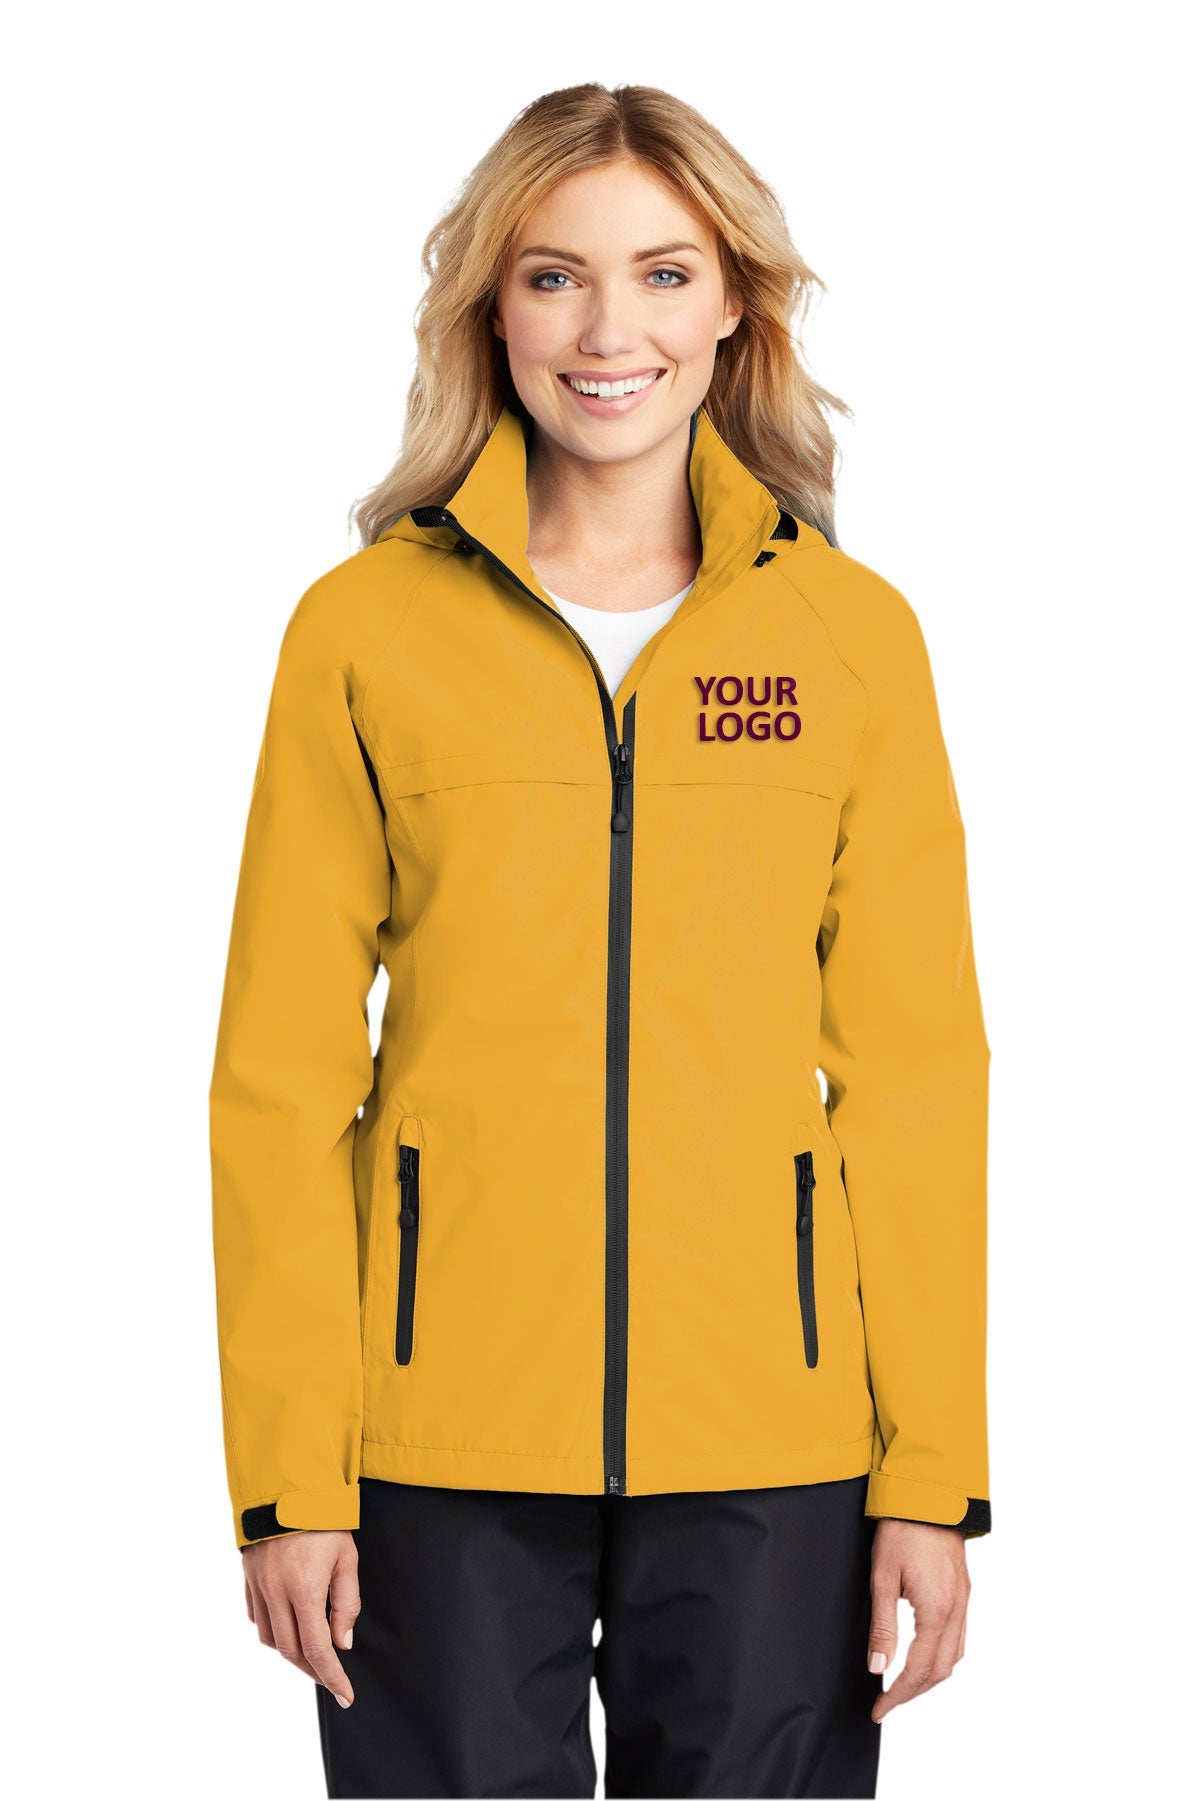 Port Authority Slicker Yellow L333 company jackets with logo